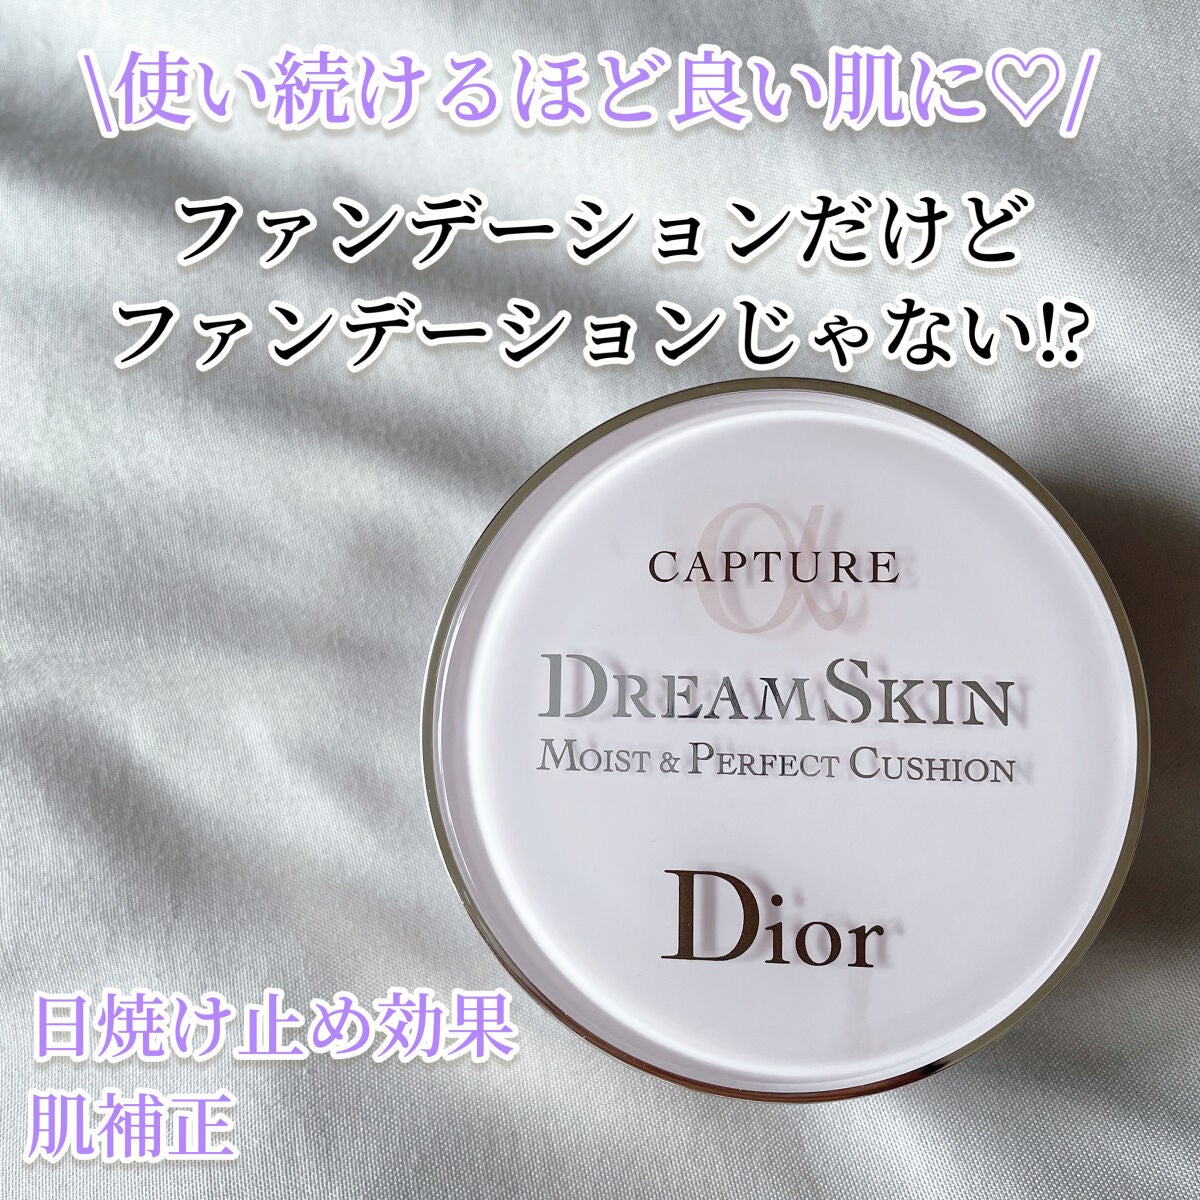 クリスチャンディオール Dior カプチュールドリームスキンモイストクッション